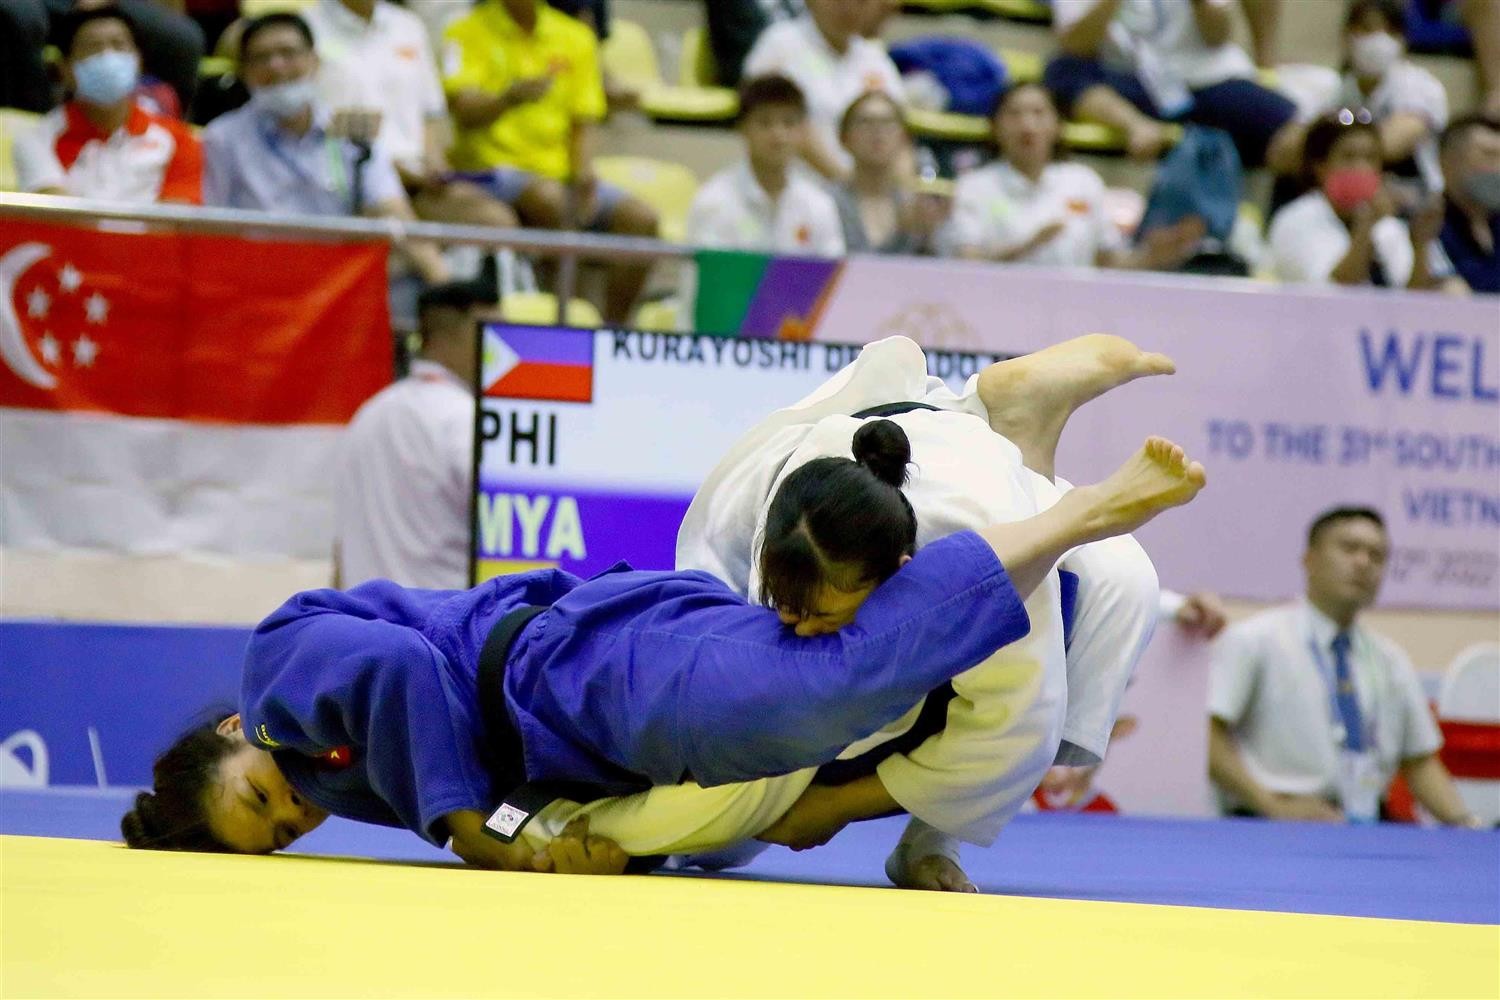 judo-1-1652964890.jpg